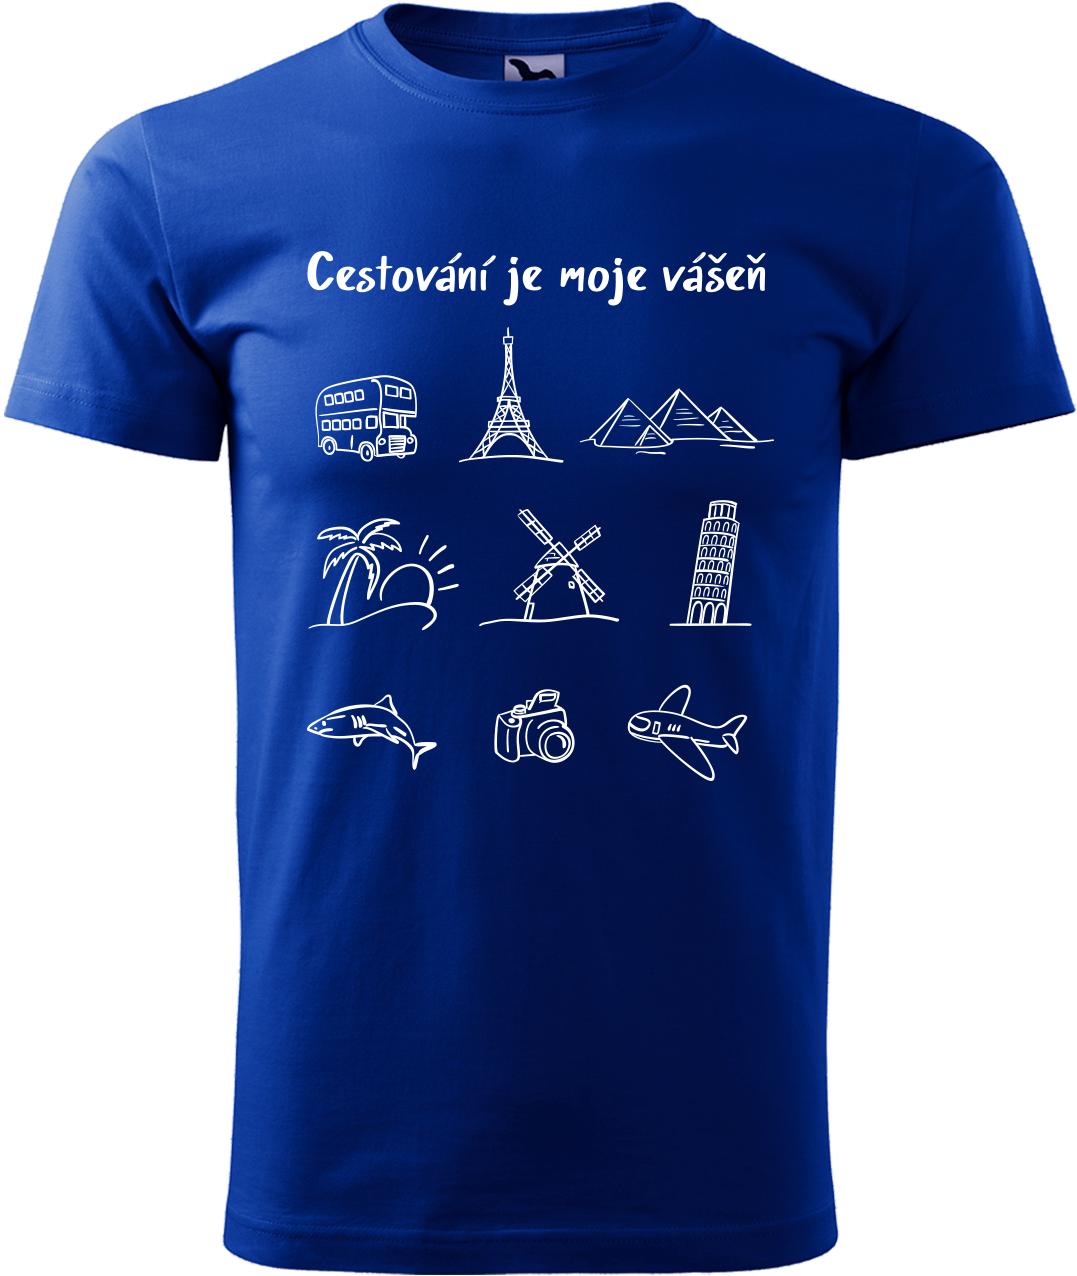 Pánské cestovatelské tričko - Cestování je moje vášeň Velikost: XL, Barva: Královská modrá (05)